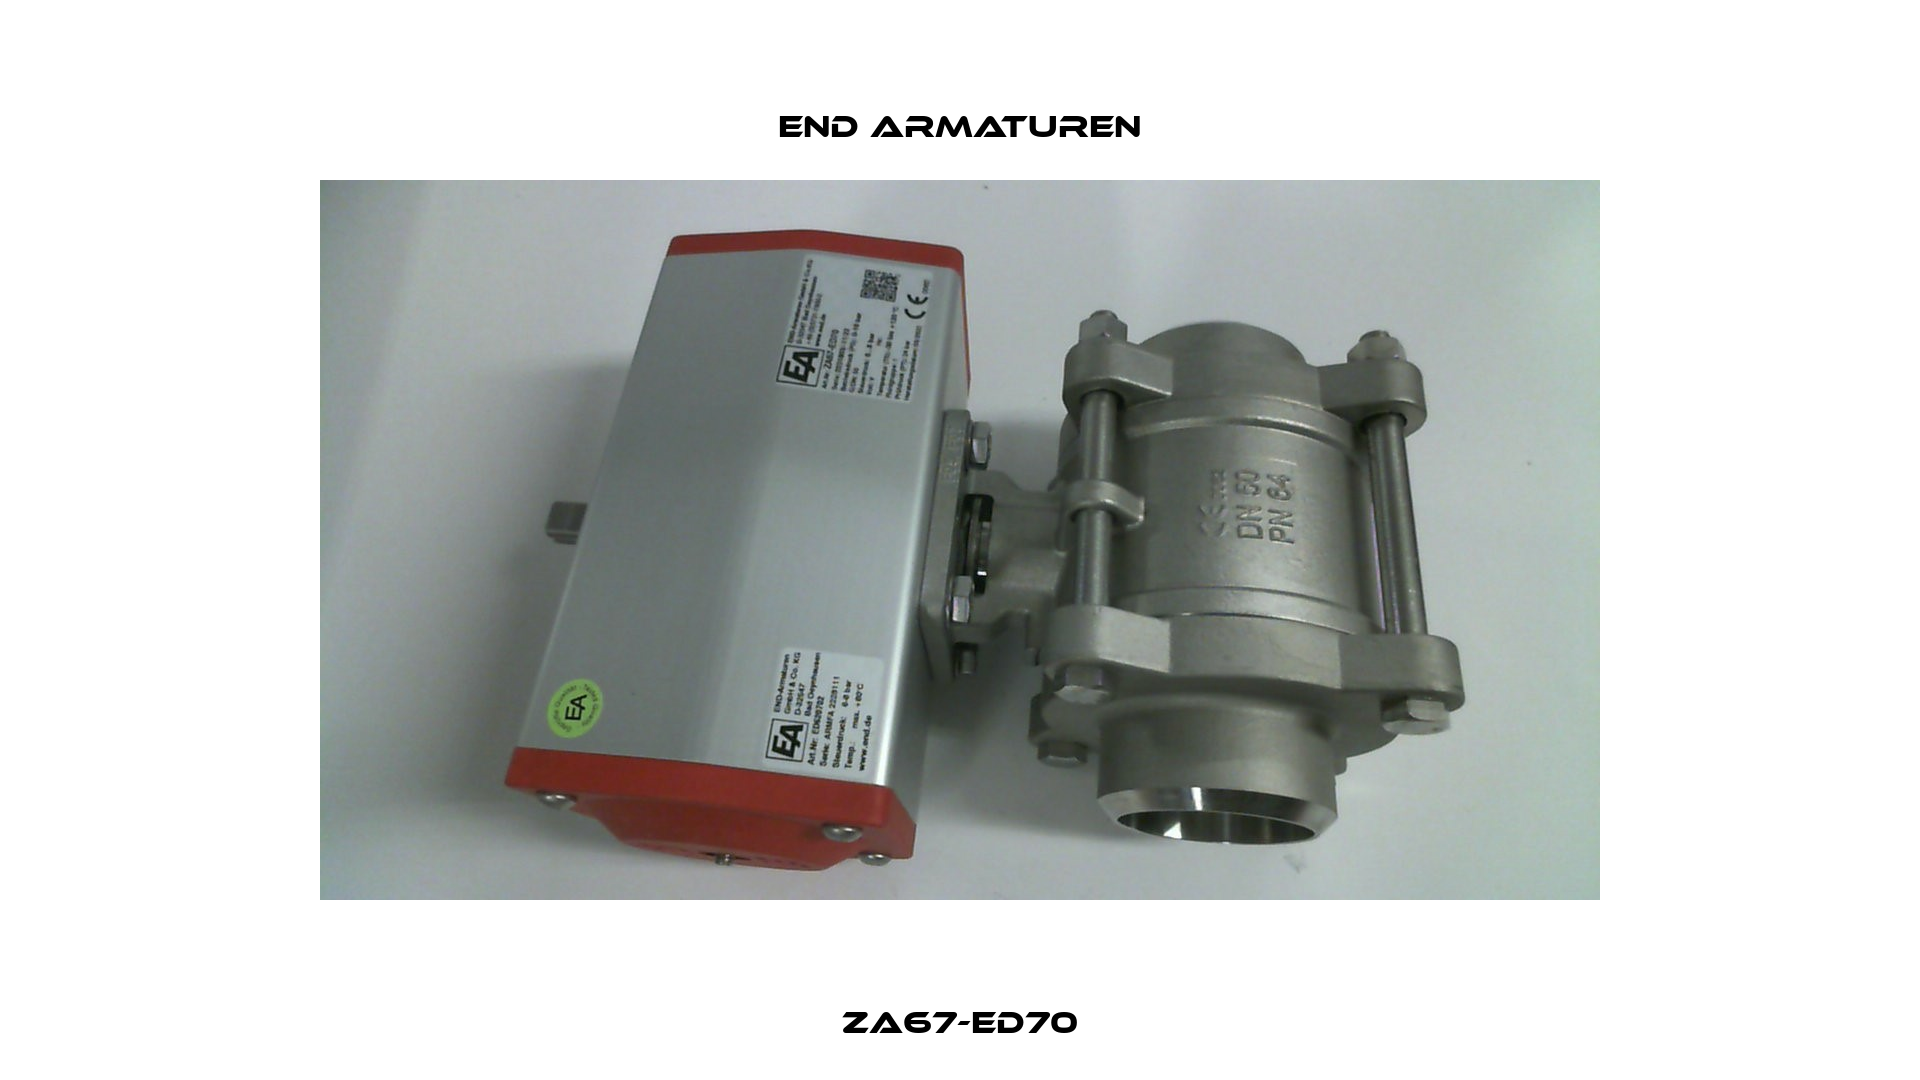 ZA67-ED70 End Armaturen